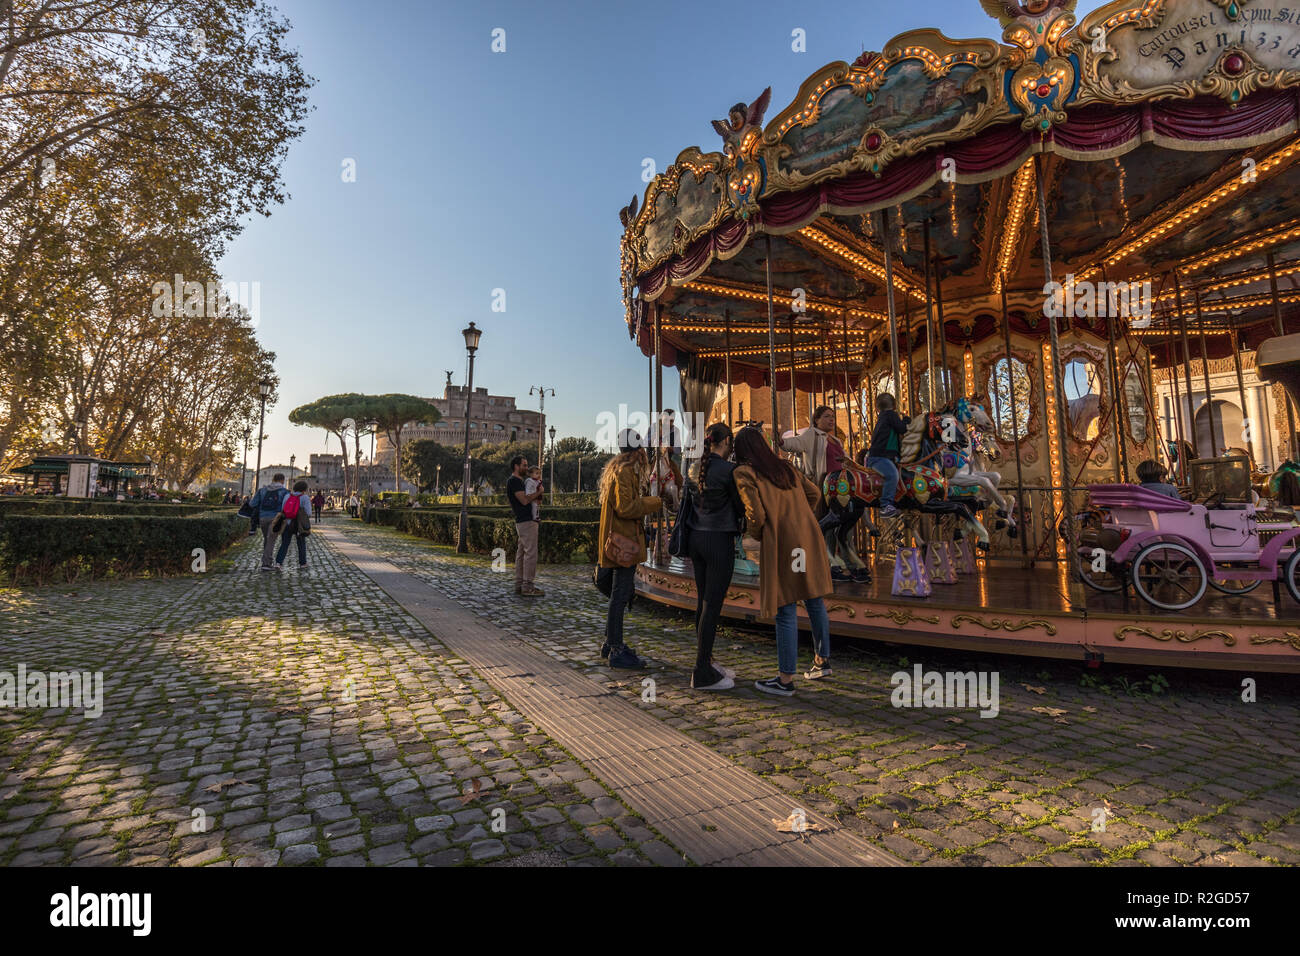 11/09/2018 - Rom, Italien: Karussell in Rom mit Kindern und Touristen spielen vor dem Castel Sant'Angelo, im historischen Zentrum der Stadt. Menschen und Fa Stockfoto